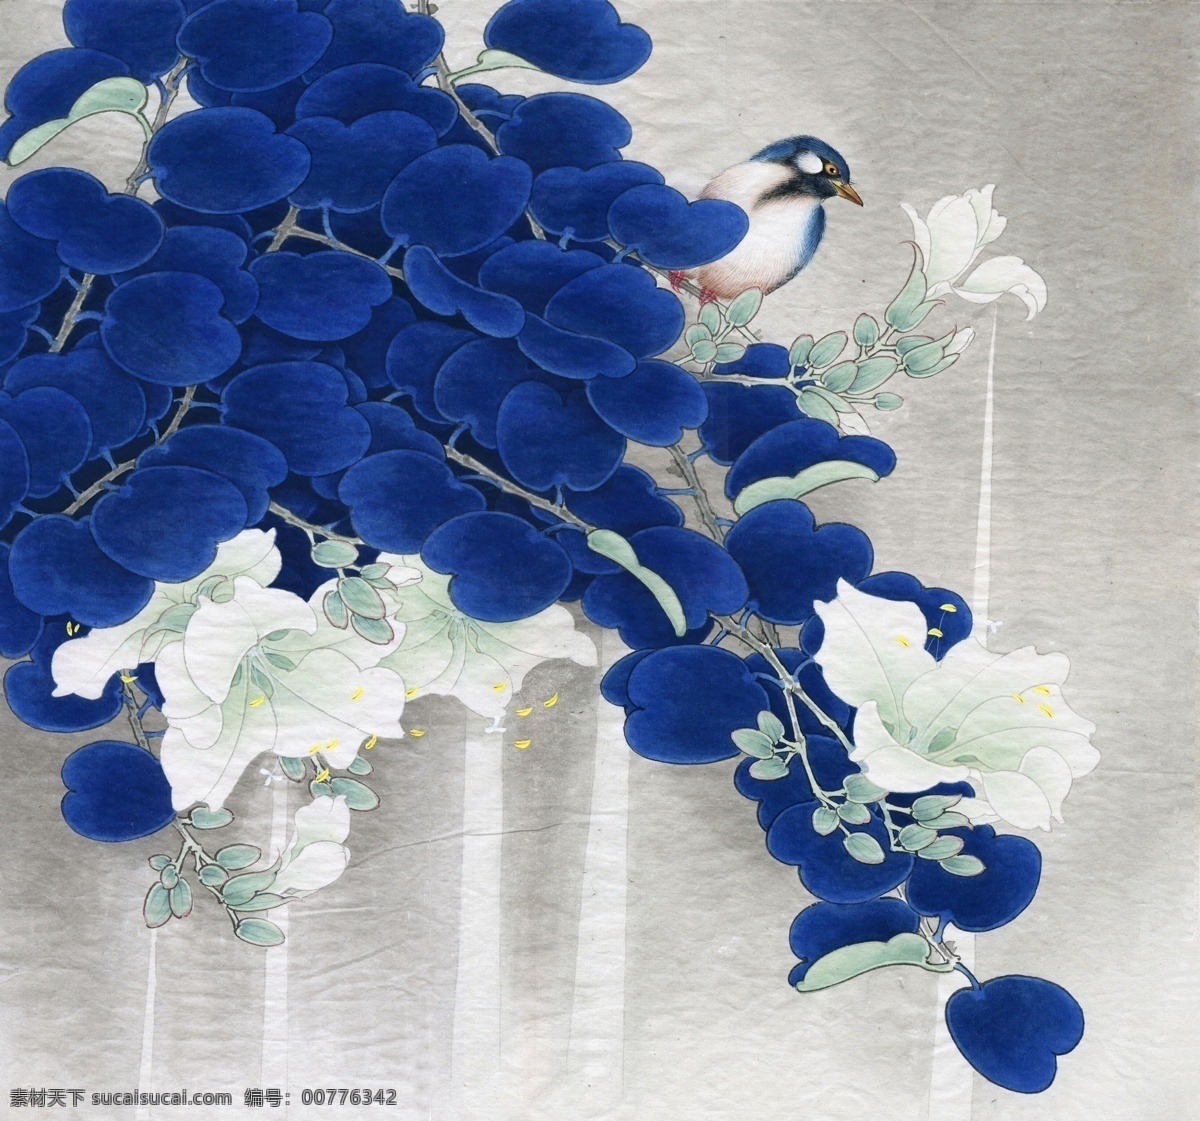 中式 古典 花鸟 工笔画 中国风绘画 精美绘画 植物花鸟 装饰画 古典画 牡丹花朵 绿叶 繁花 自然景观 自然风景